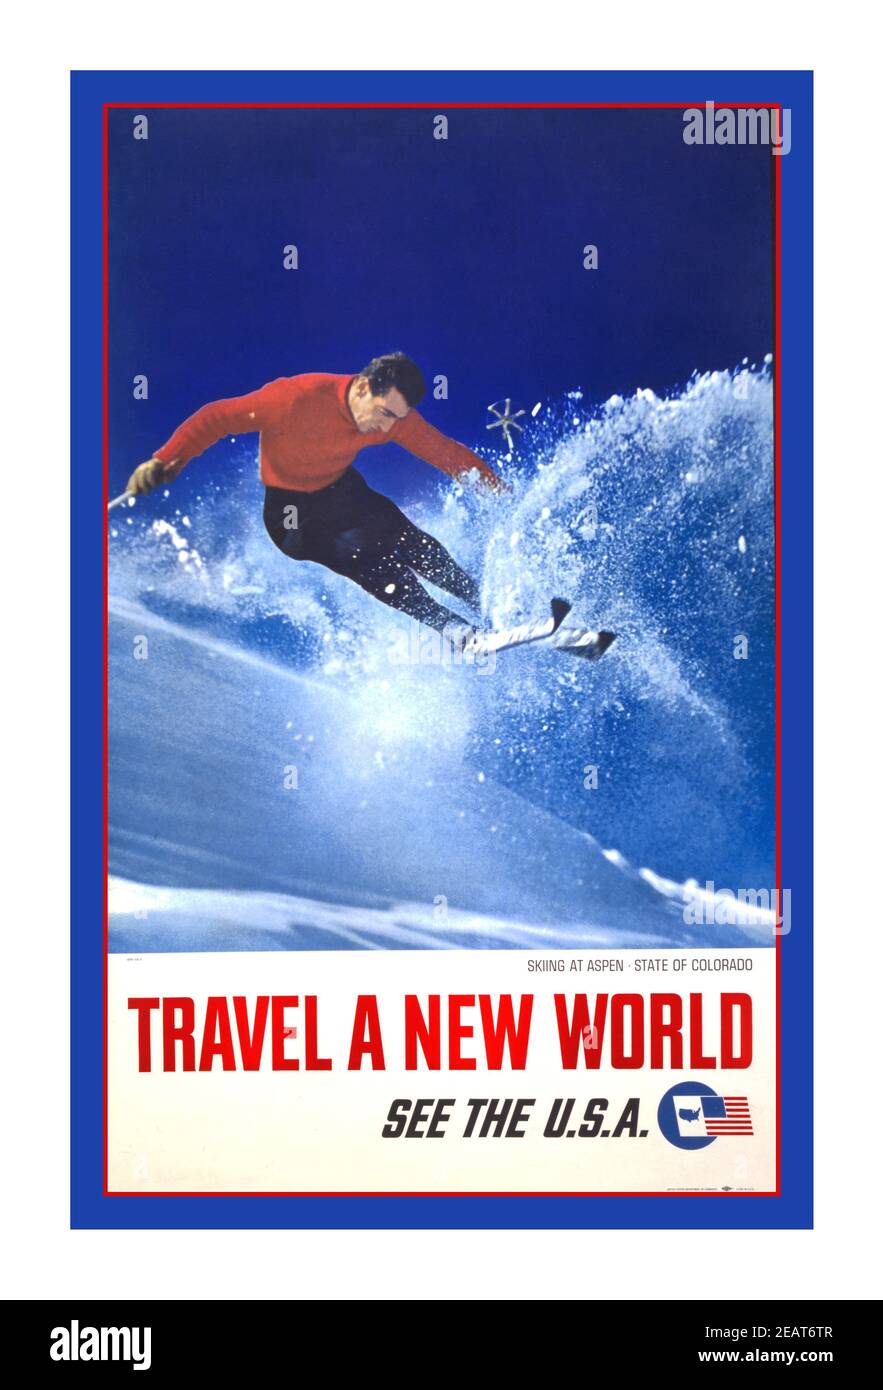 Ski ski les années 60 à Aspen, état du Colorado--Voyage un nouveau monde--Voir les Etats-Unis Date de création/publication: [1962] Moyen: 1 imprimé (affiche) : couleur: Publicité montrant le ski d'homme. Banque D'Images